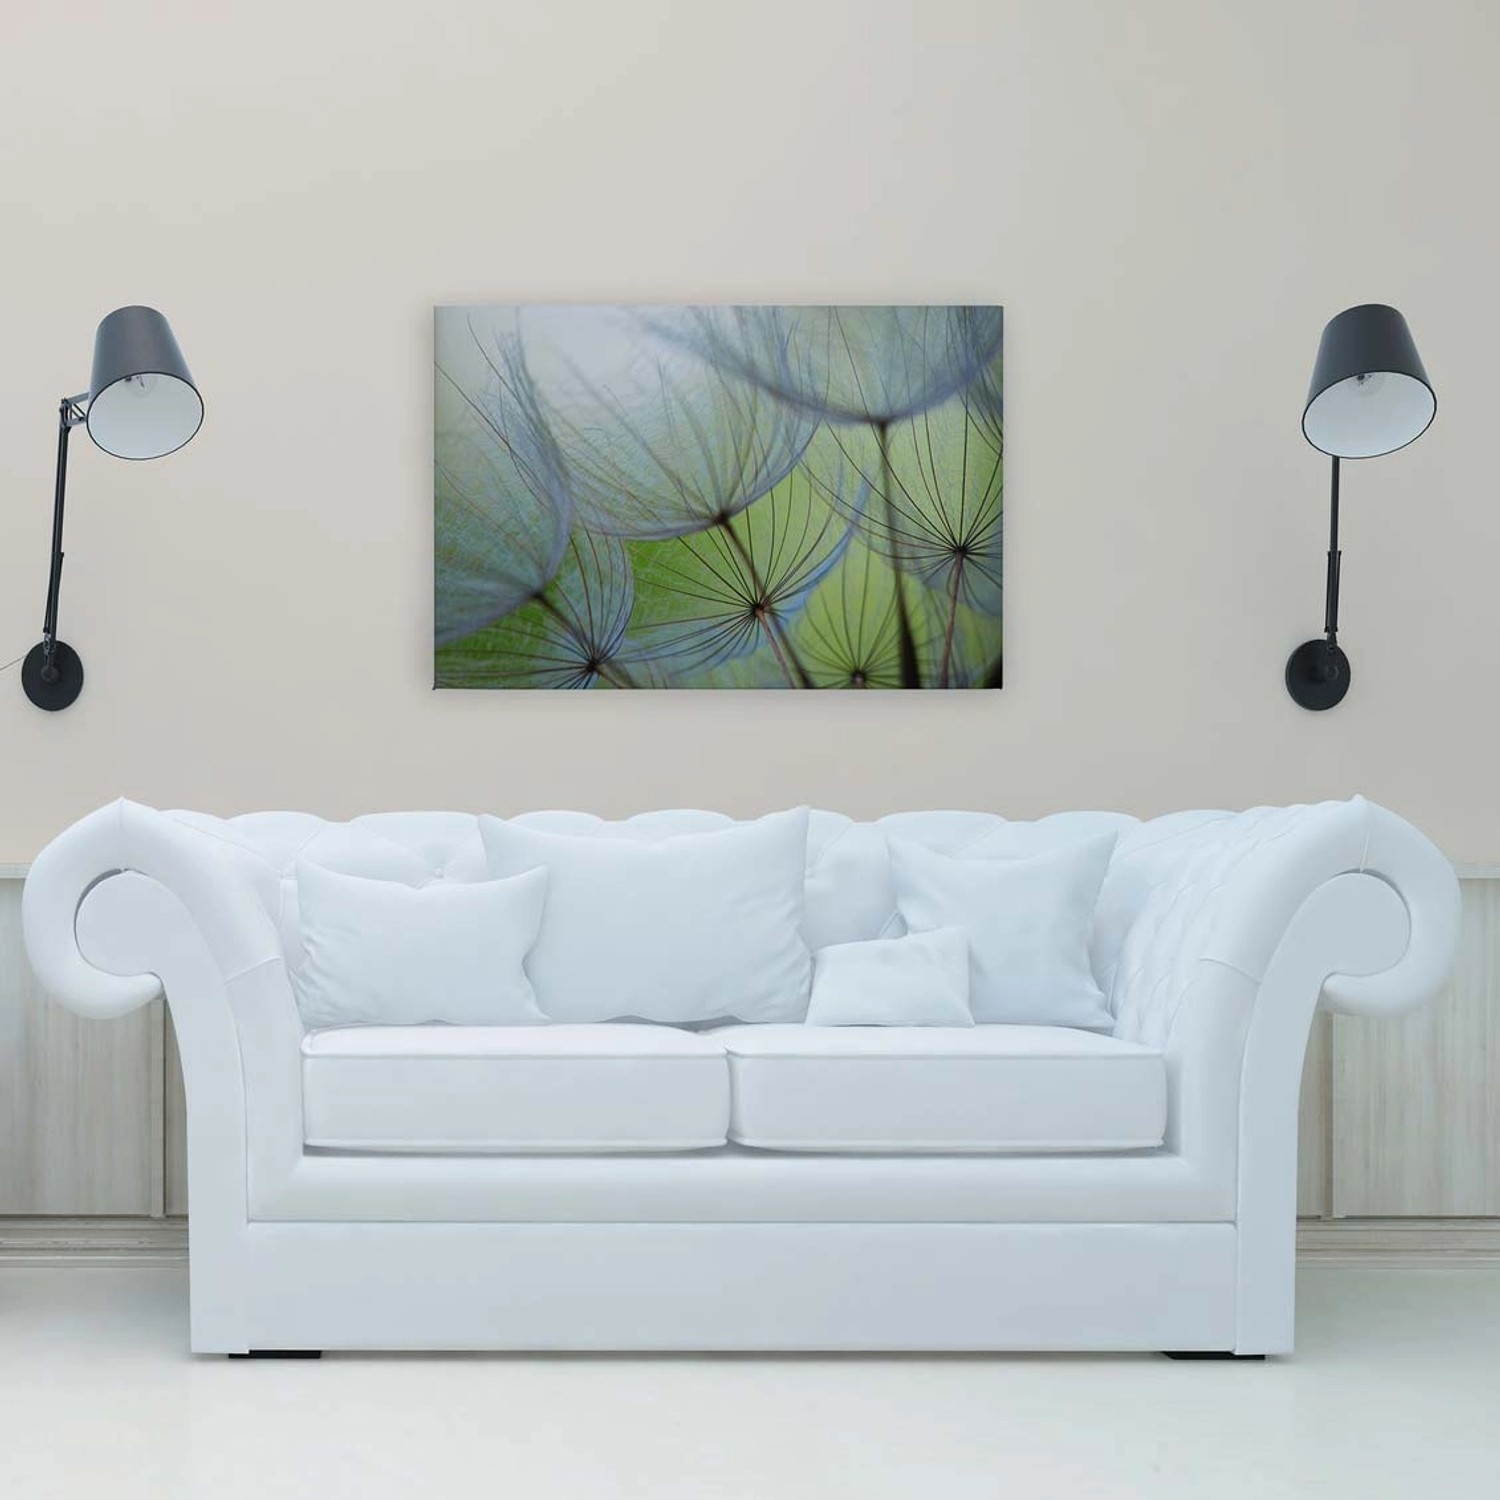 Bricoflor Leinwandbild Pusteblume 120 X 80 Cm Für Schlafzimmer Und Büro Deko Wandbild Grün Weiß Leinwand Mit Blumen Moti